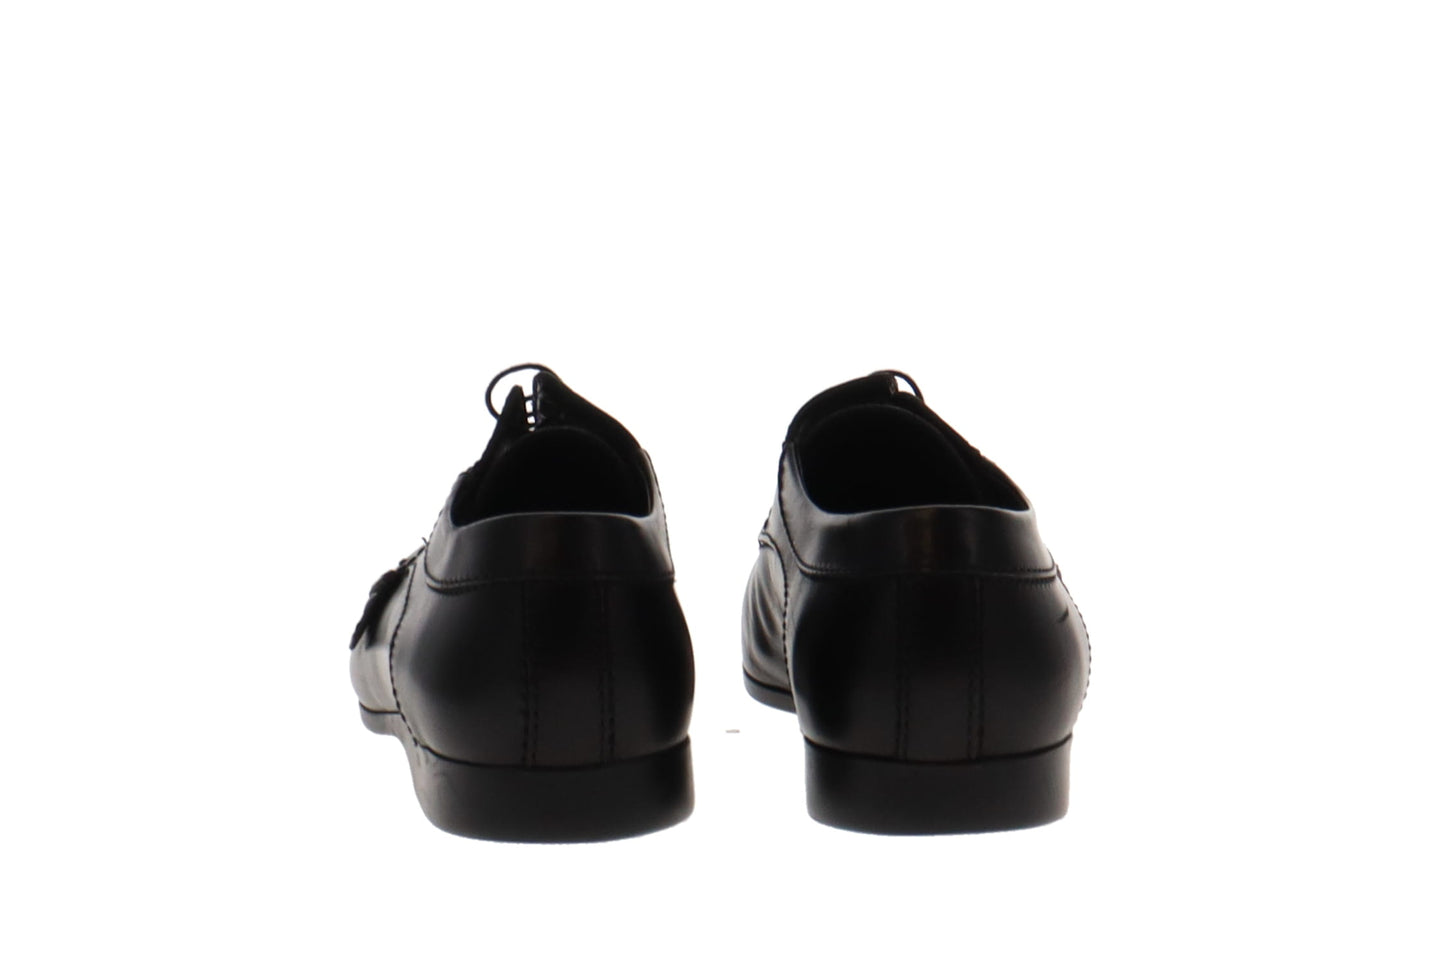 Louis Vuitton Men’s Black Leather Formal Shoes UK 8